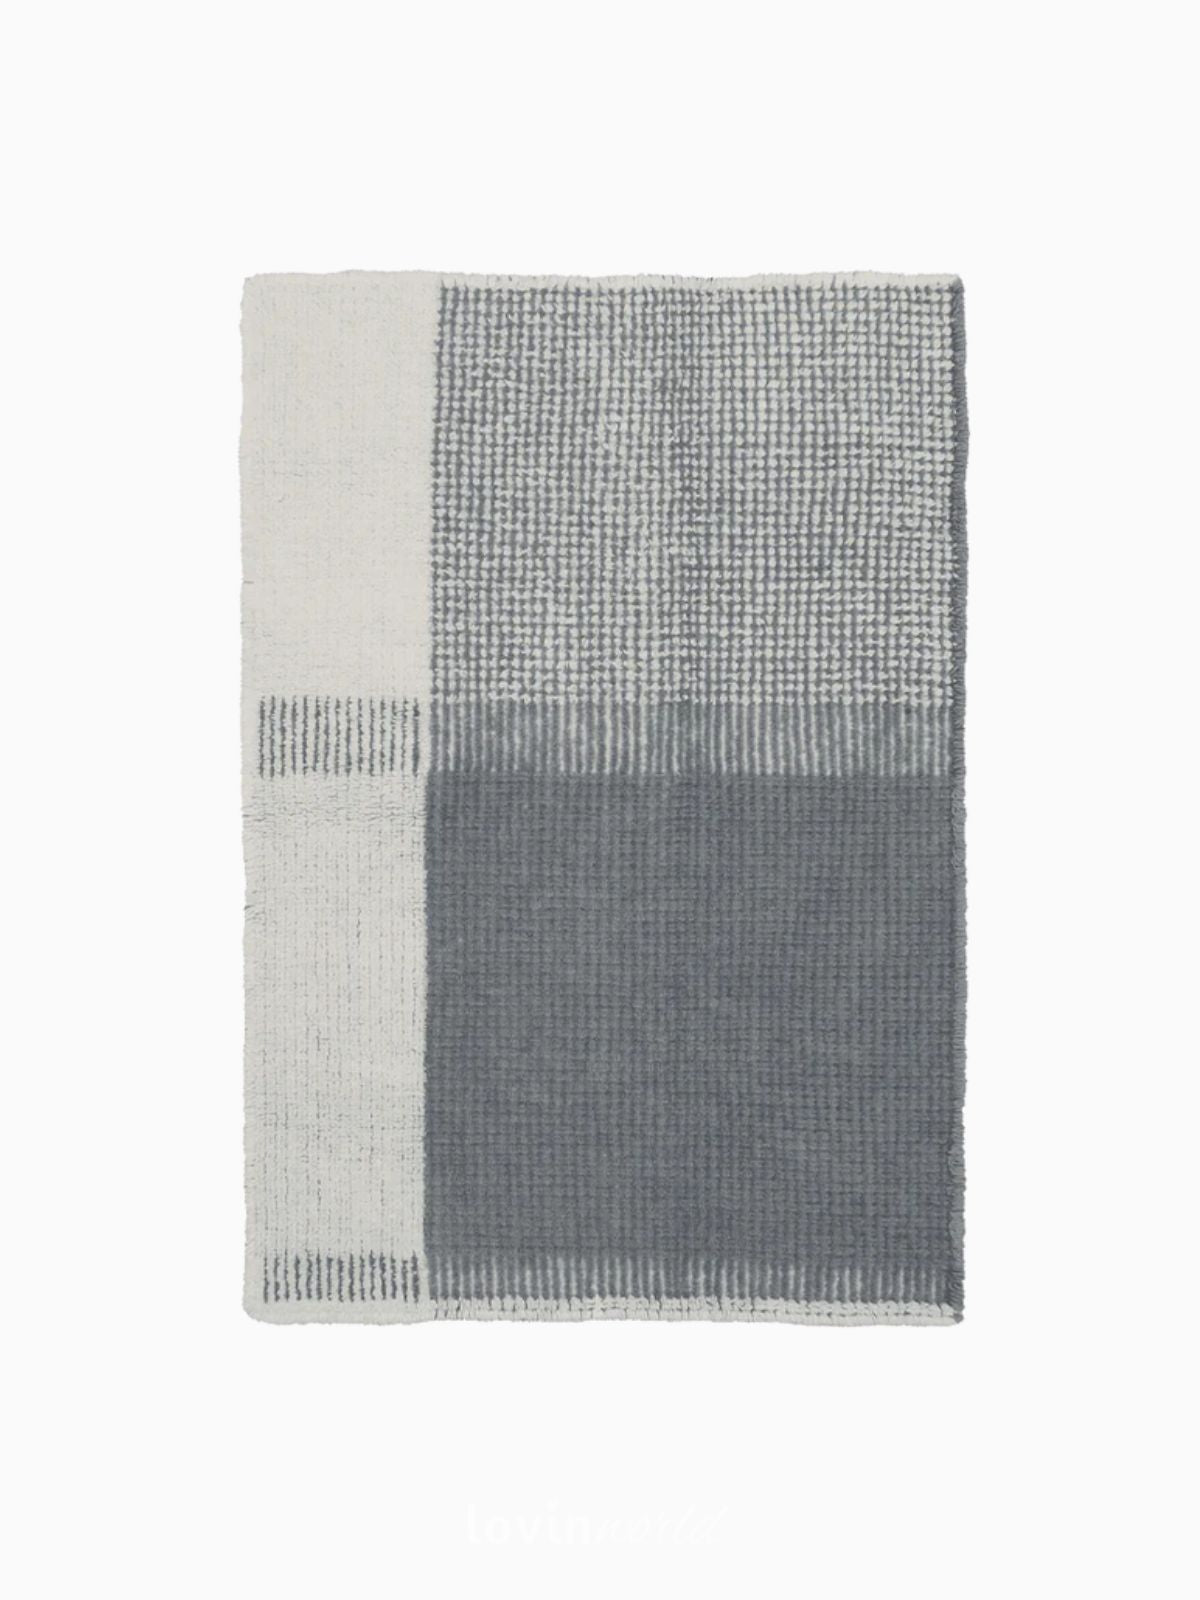 Tappeto lavabile Kaya in lana, colore blu 120x170 cm.-1